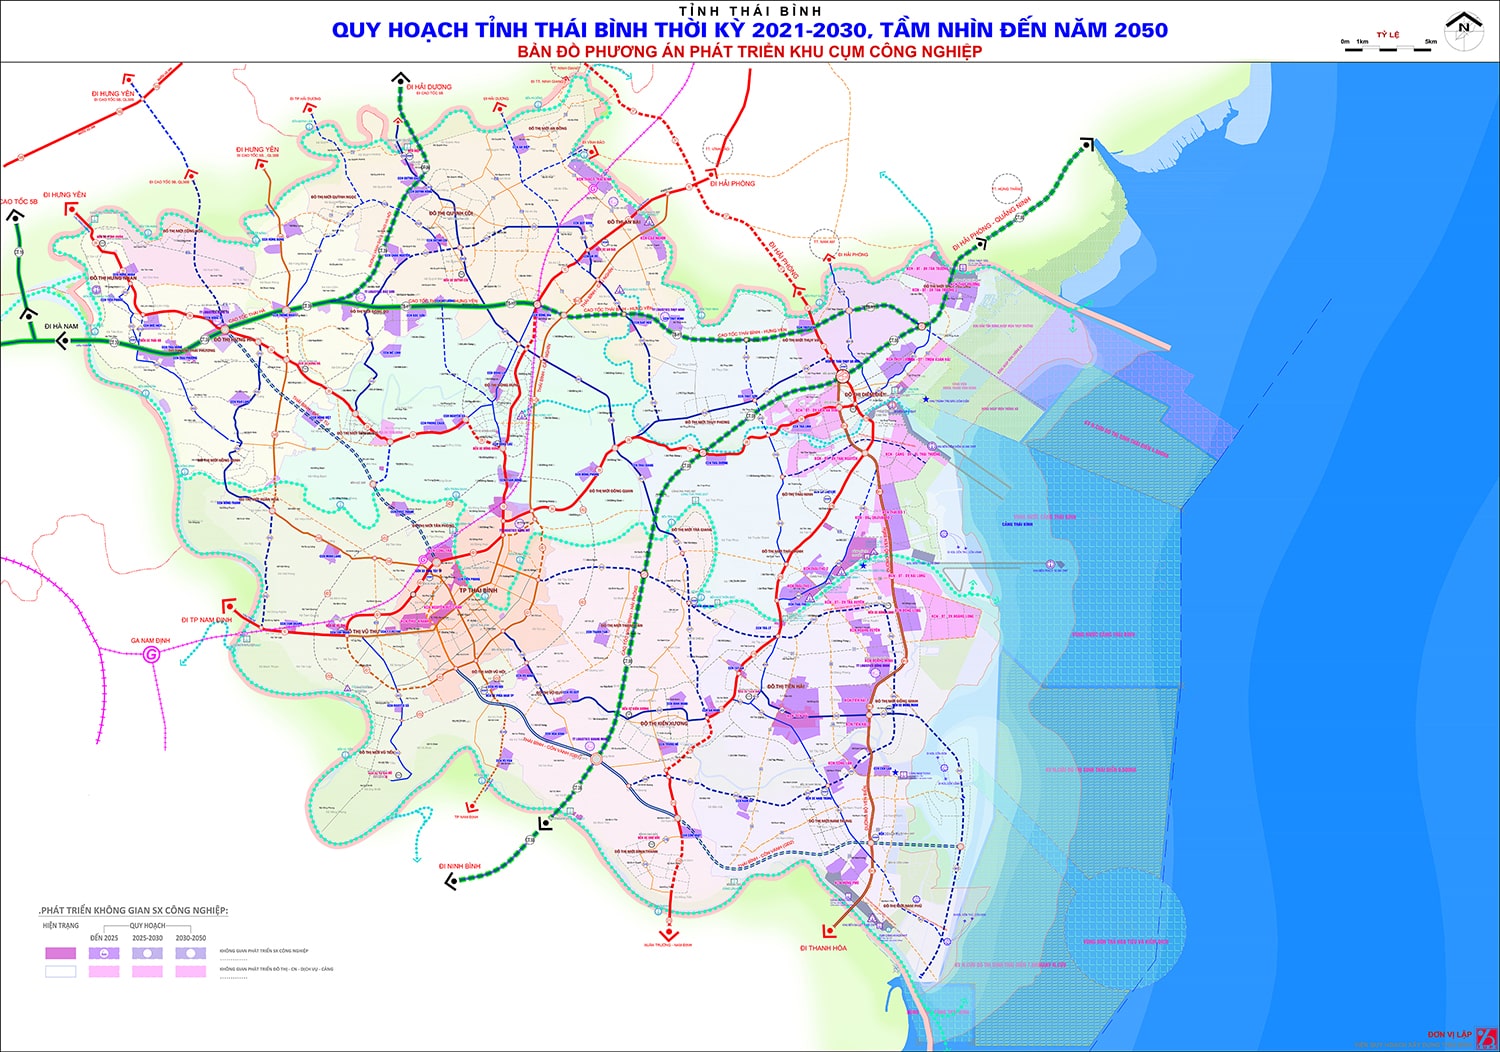 Bản đồ phương án phát triển khu, cụm công nghiệp tỉnh Thái Bình đến năm 2030